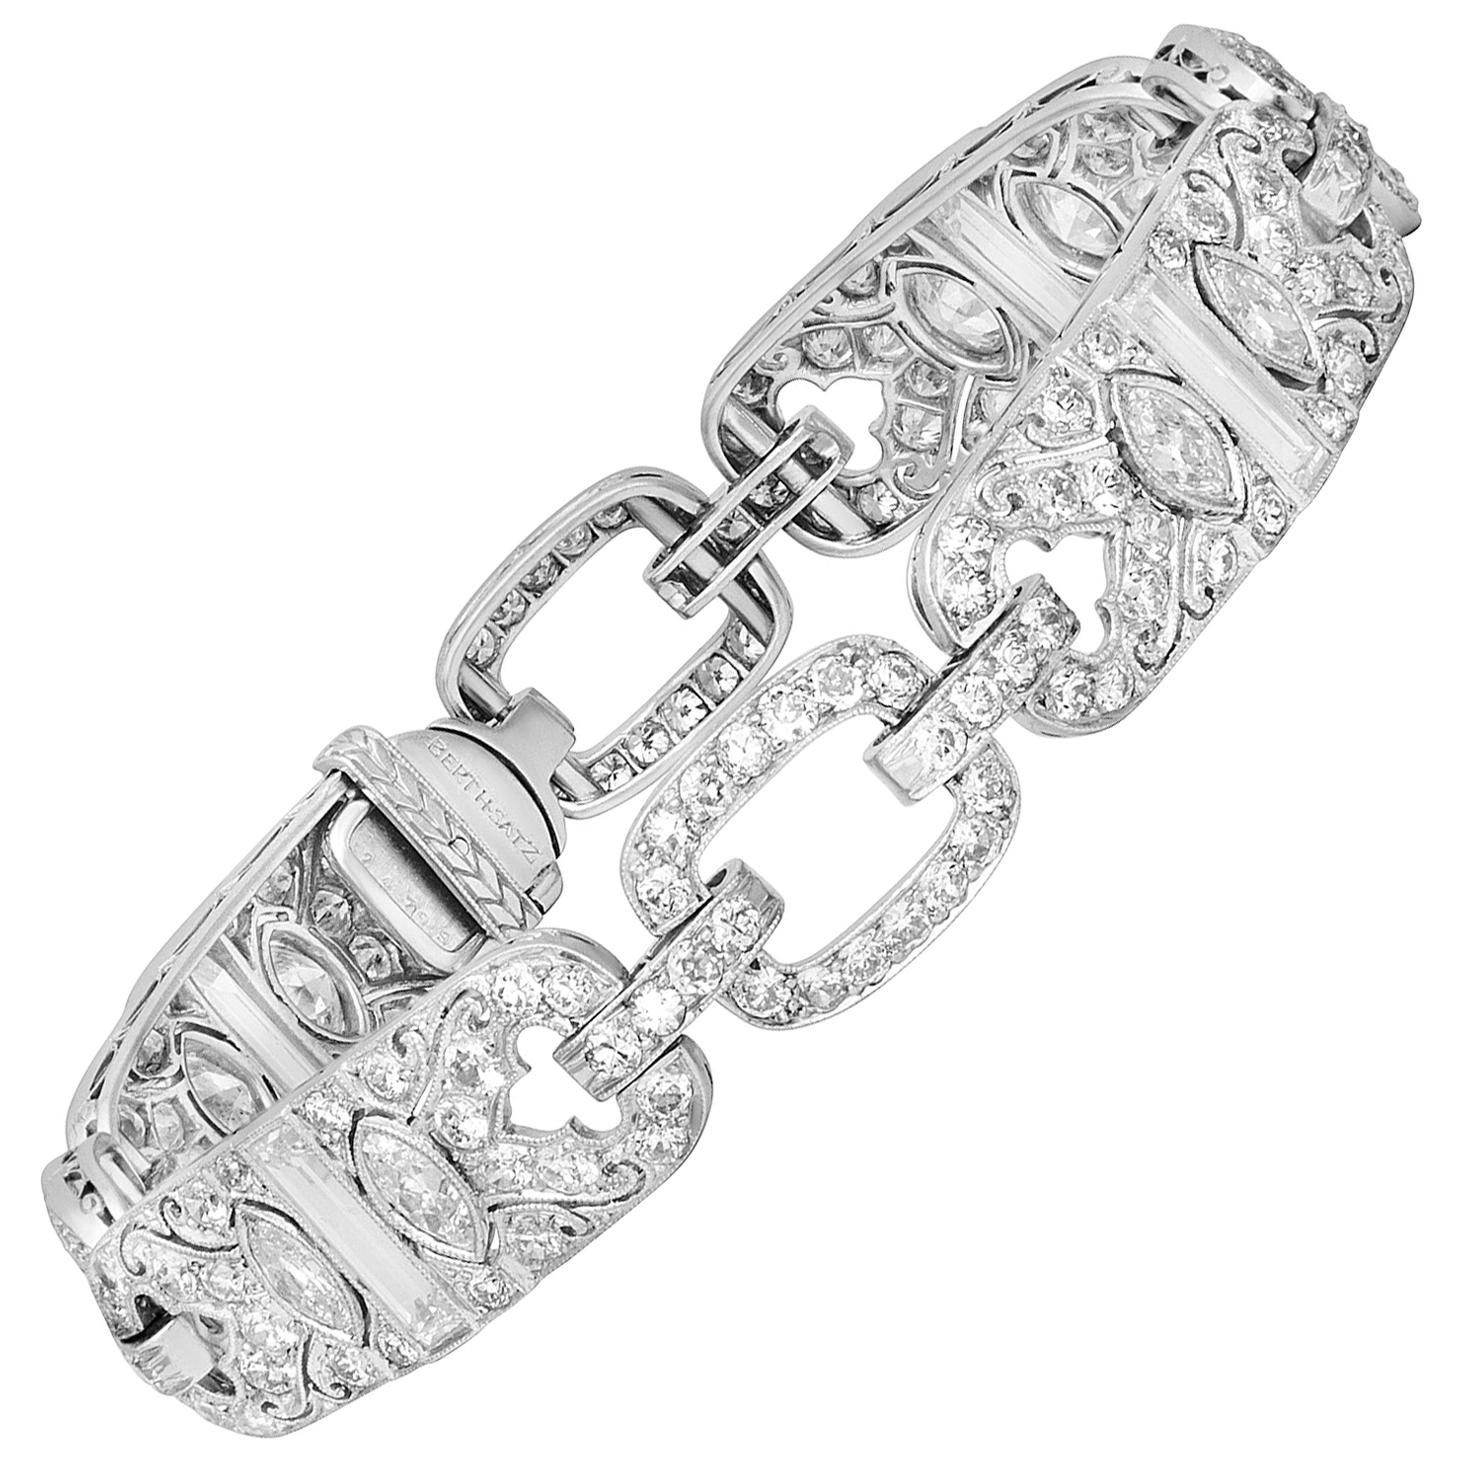 Bertram H. Satz Art Deco Platinum Diamond Bracelet